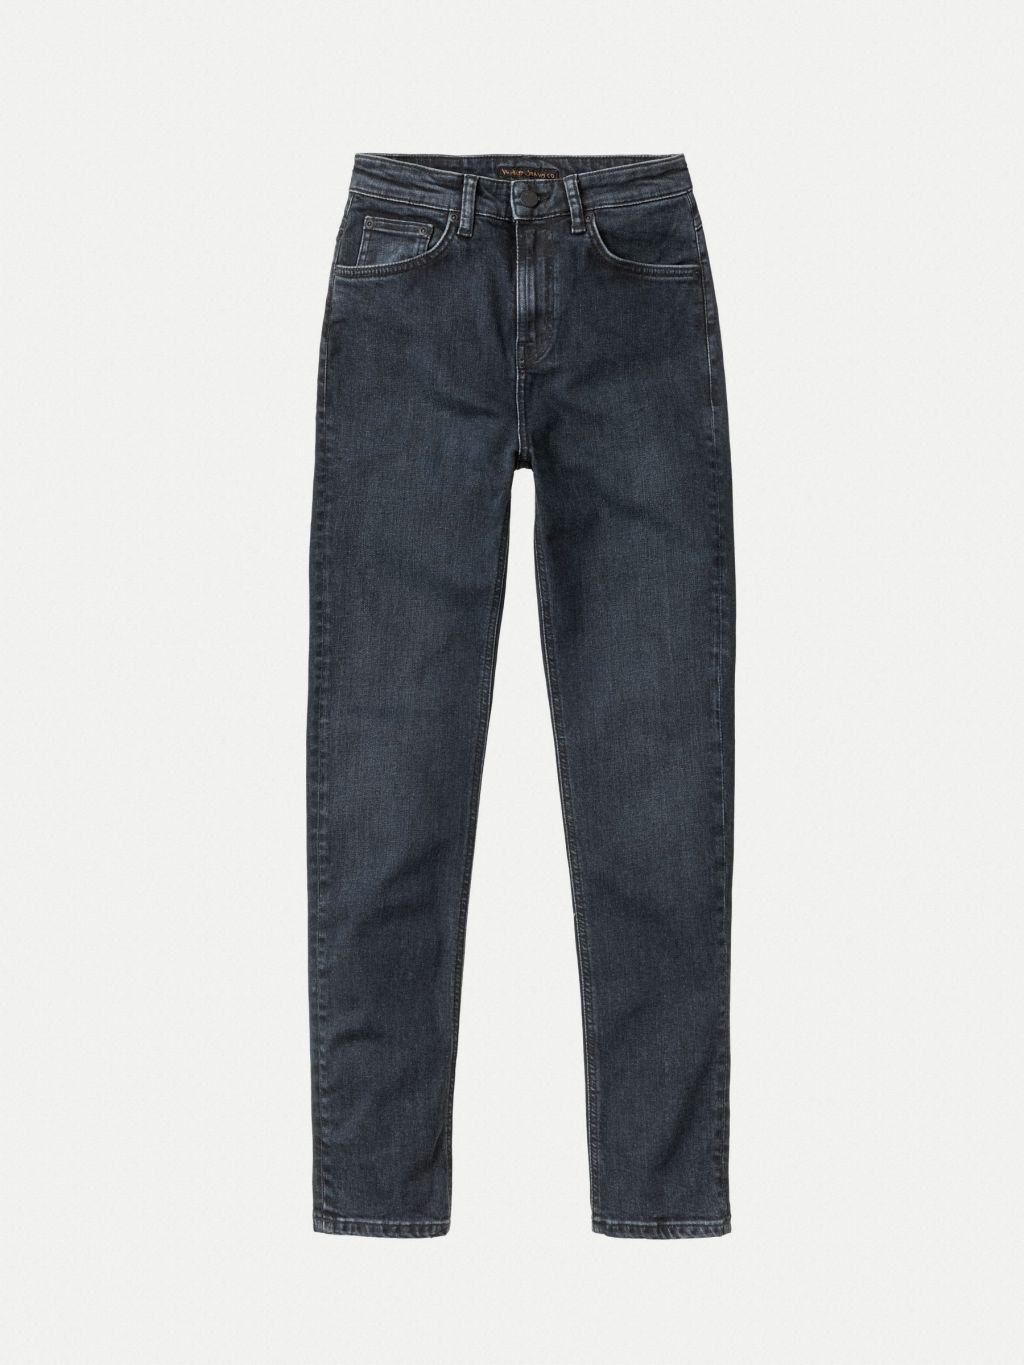 Hightop Tilde High Waist Jeans - Blue Quartz 30/28